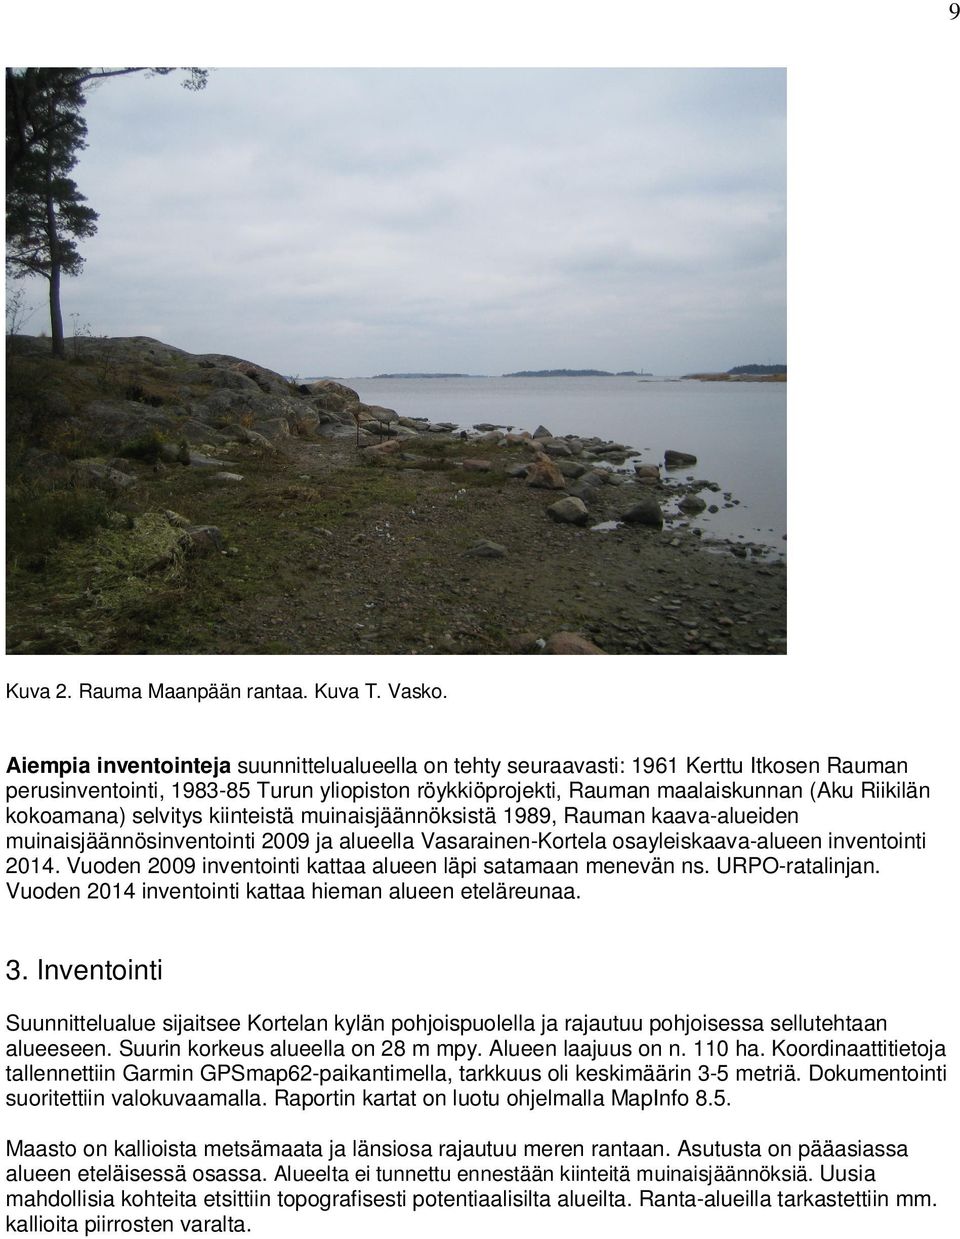 selvitys kiinteistä muinaisjäännöksistä 1989, Rauman kaava-alueiden muinaisjäännösinventointi 2009 ja alueella Vasarainen-Kortela osayleiskaava-alueen inventointi 2014.